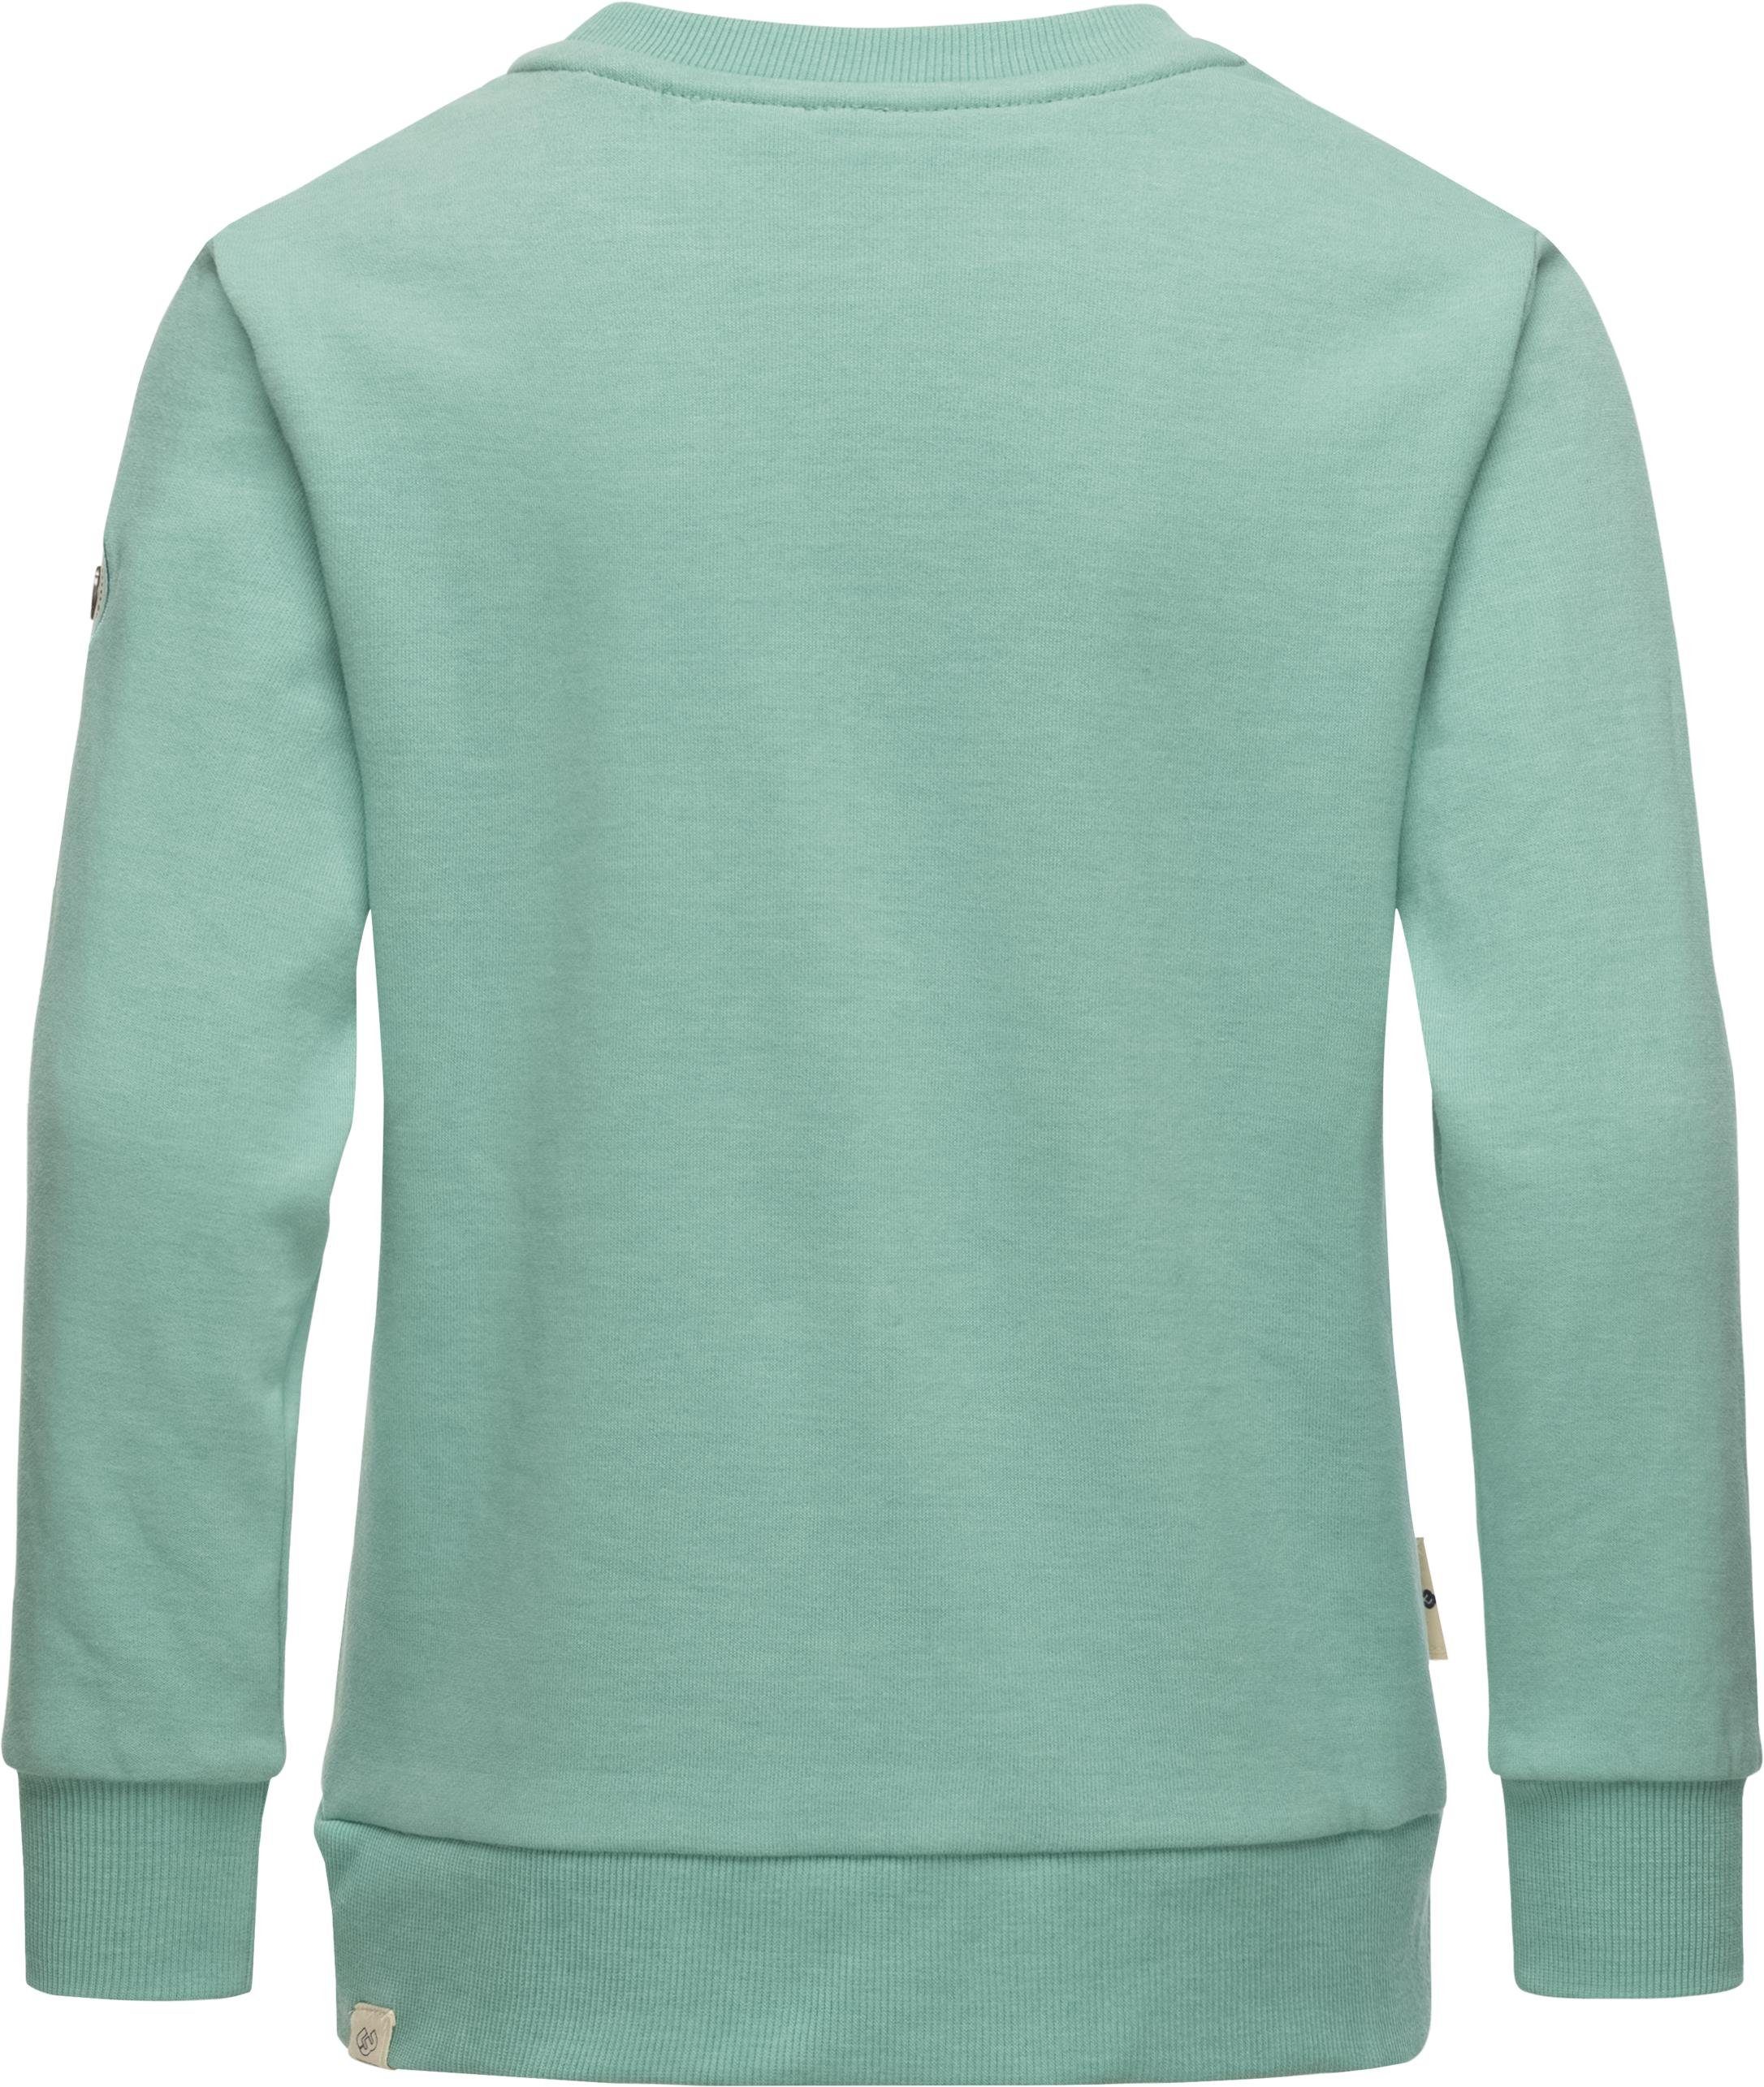 Zig Zag Ragwear coolem Modischer Bündchen Streifen, Printpullover Sweatshirt mit weiche Organic Print, m. Print Mädchen Sweater stylisches Evka